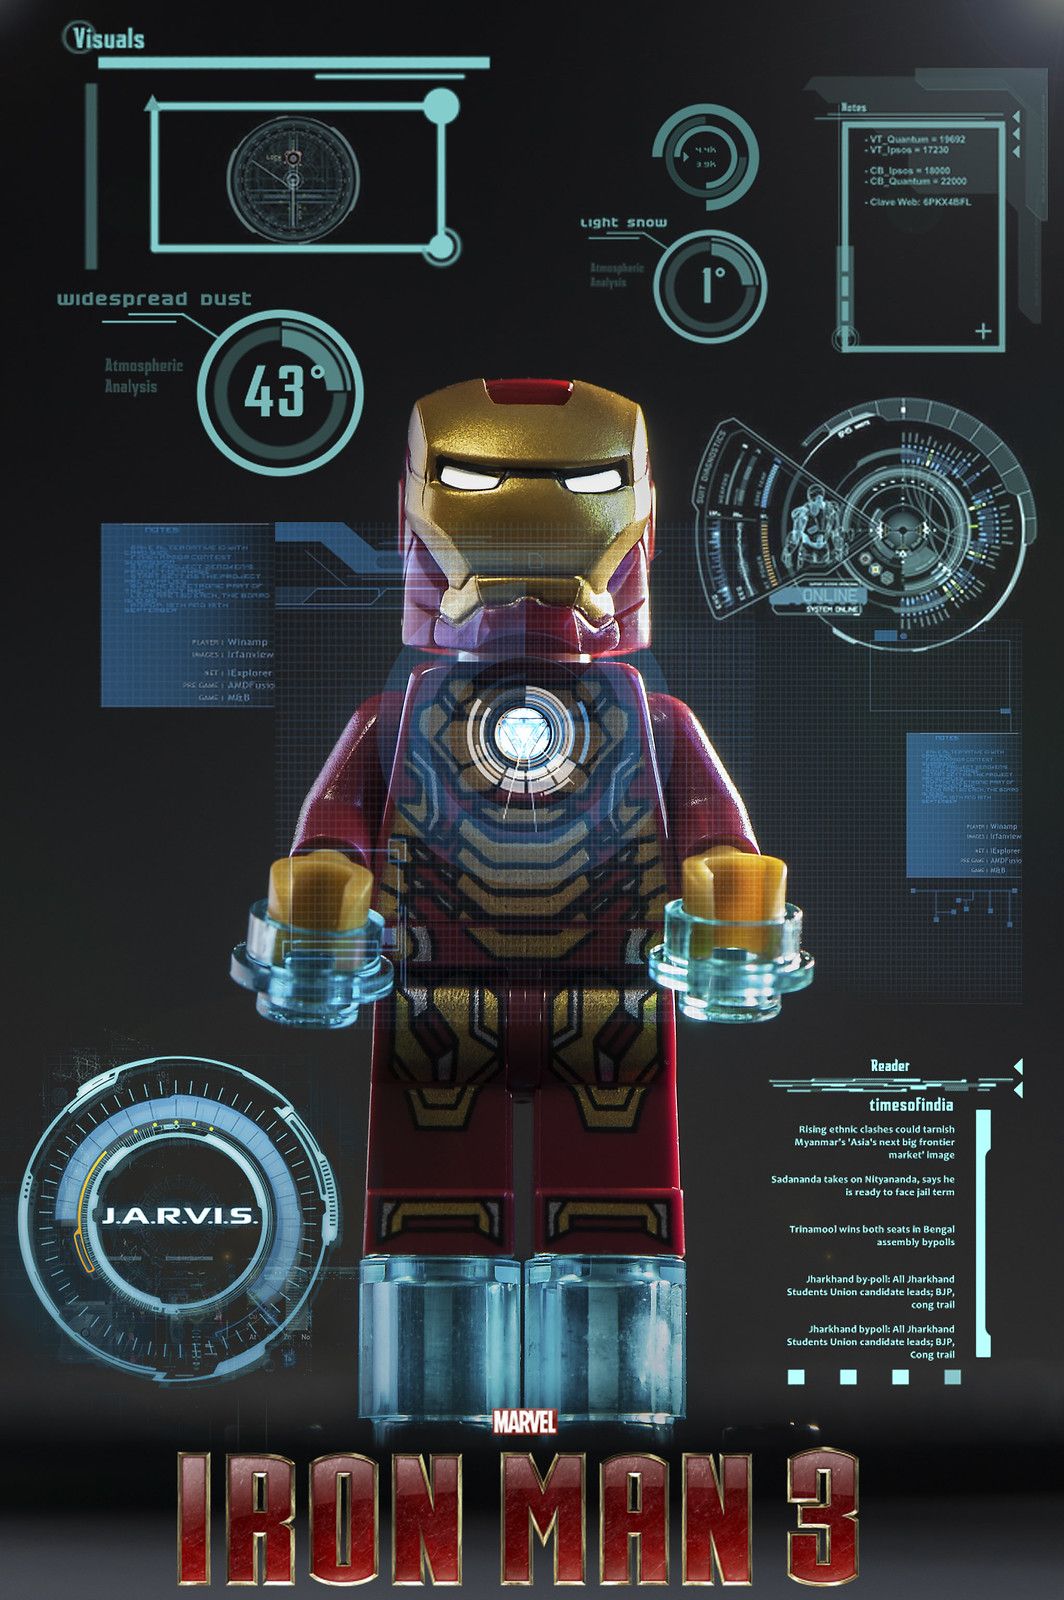 LEGO Iron man. Lego iron man, Lego wallpaper, Lego super heroes